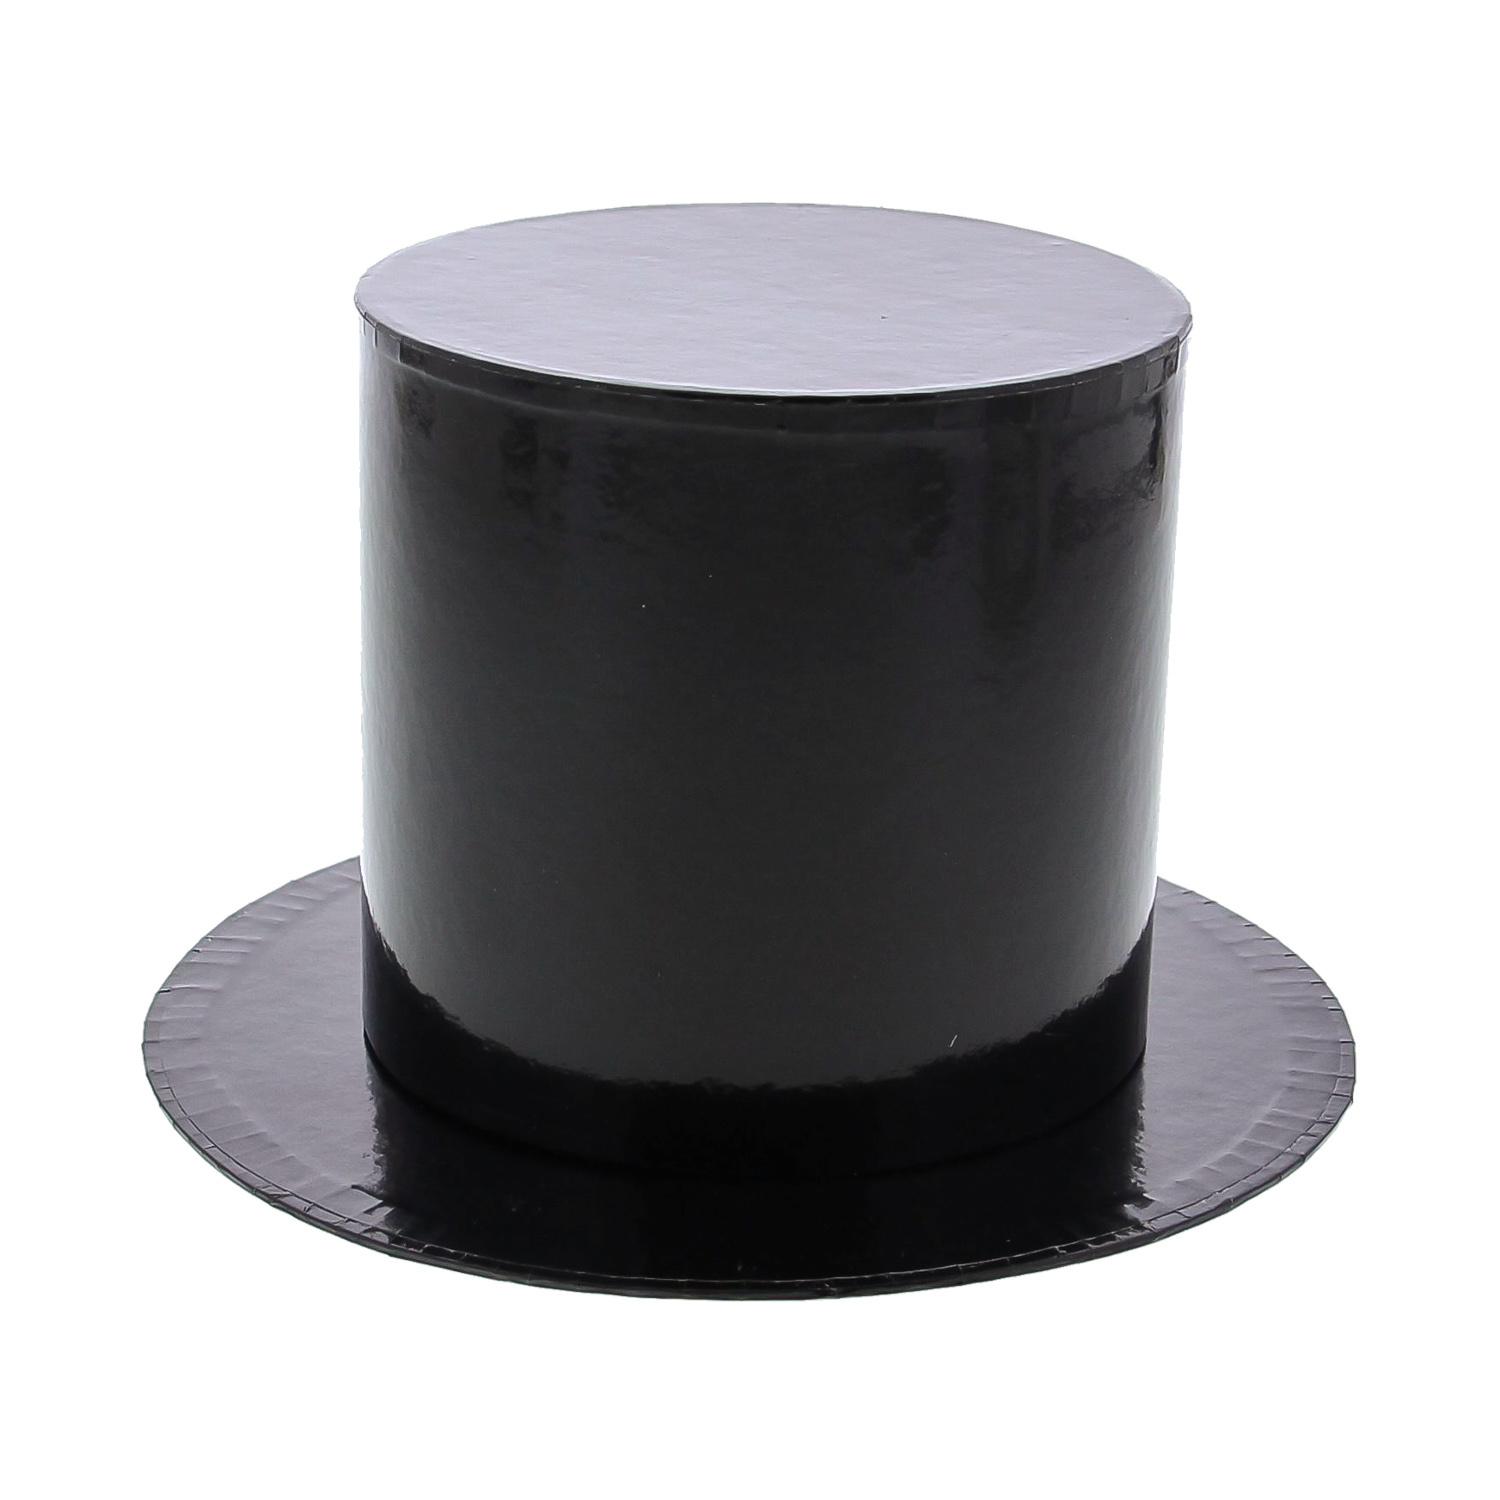 Pipe hat box medium - 160*160*97mm - 6 pieces